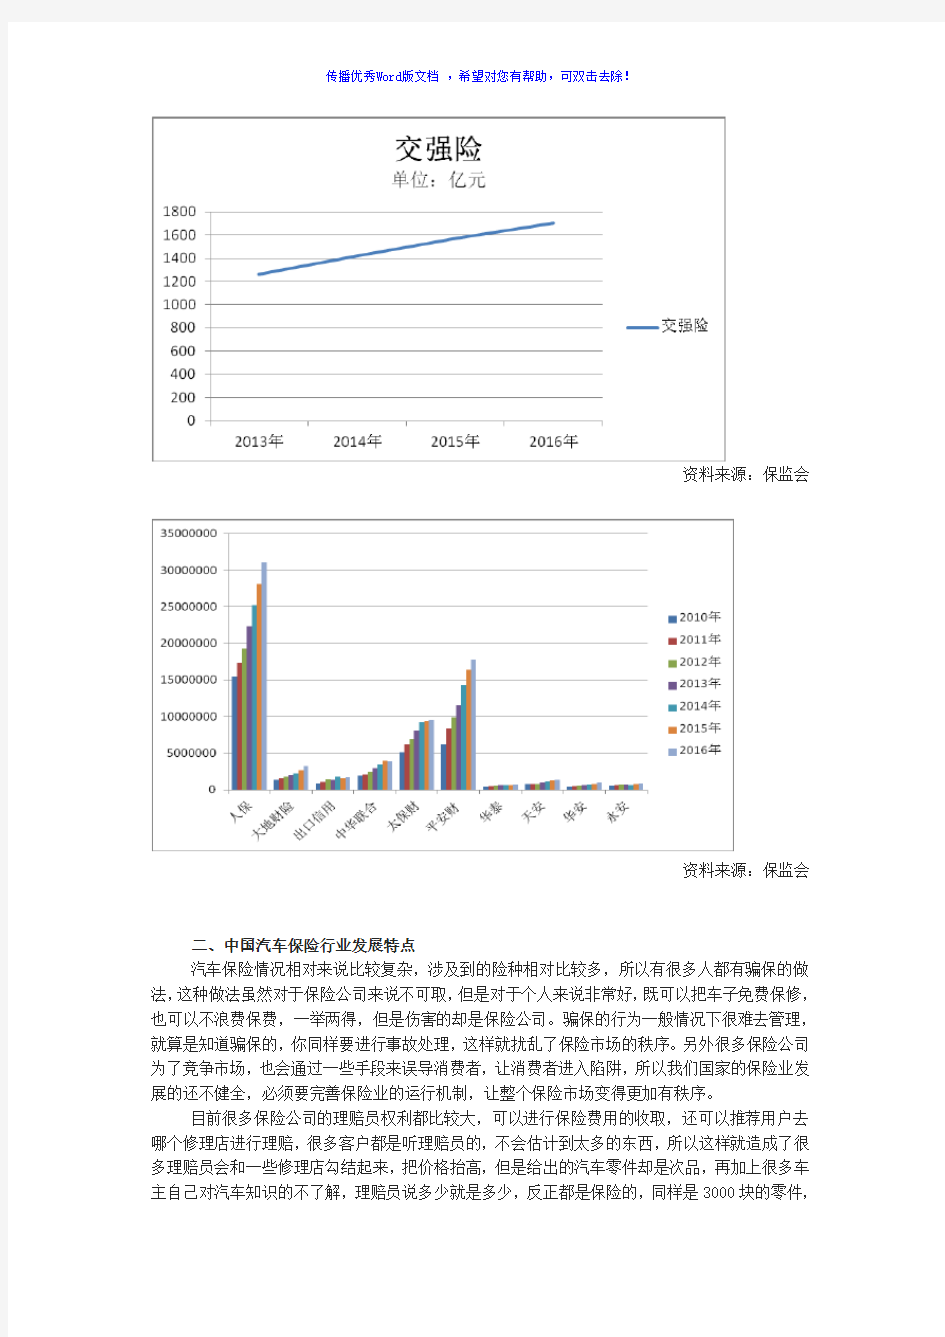 2017年中国汽车保险市场发展状况分析Word版